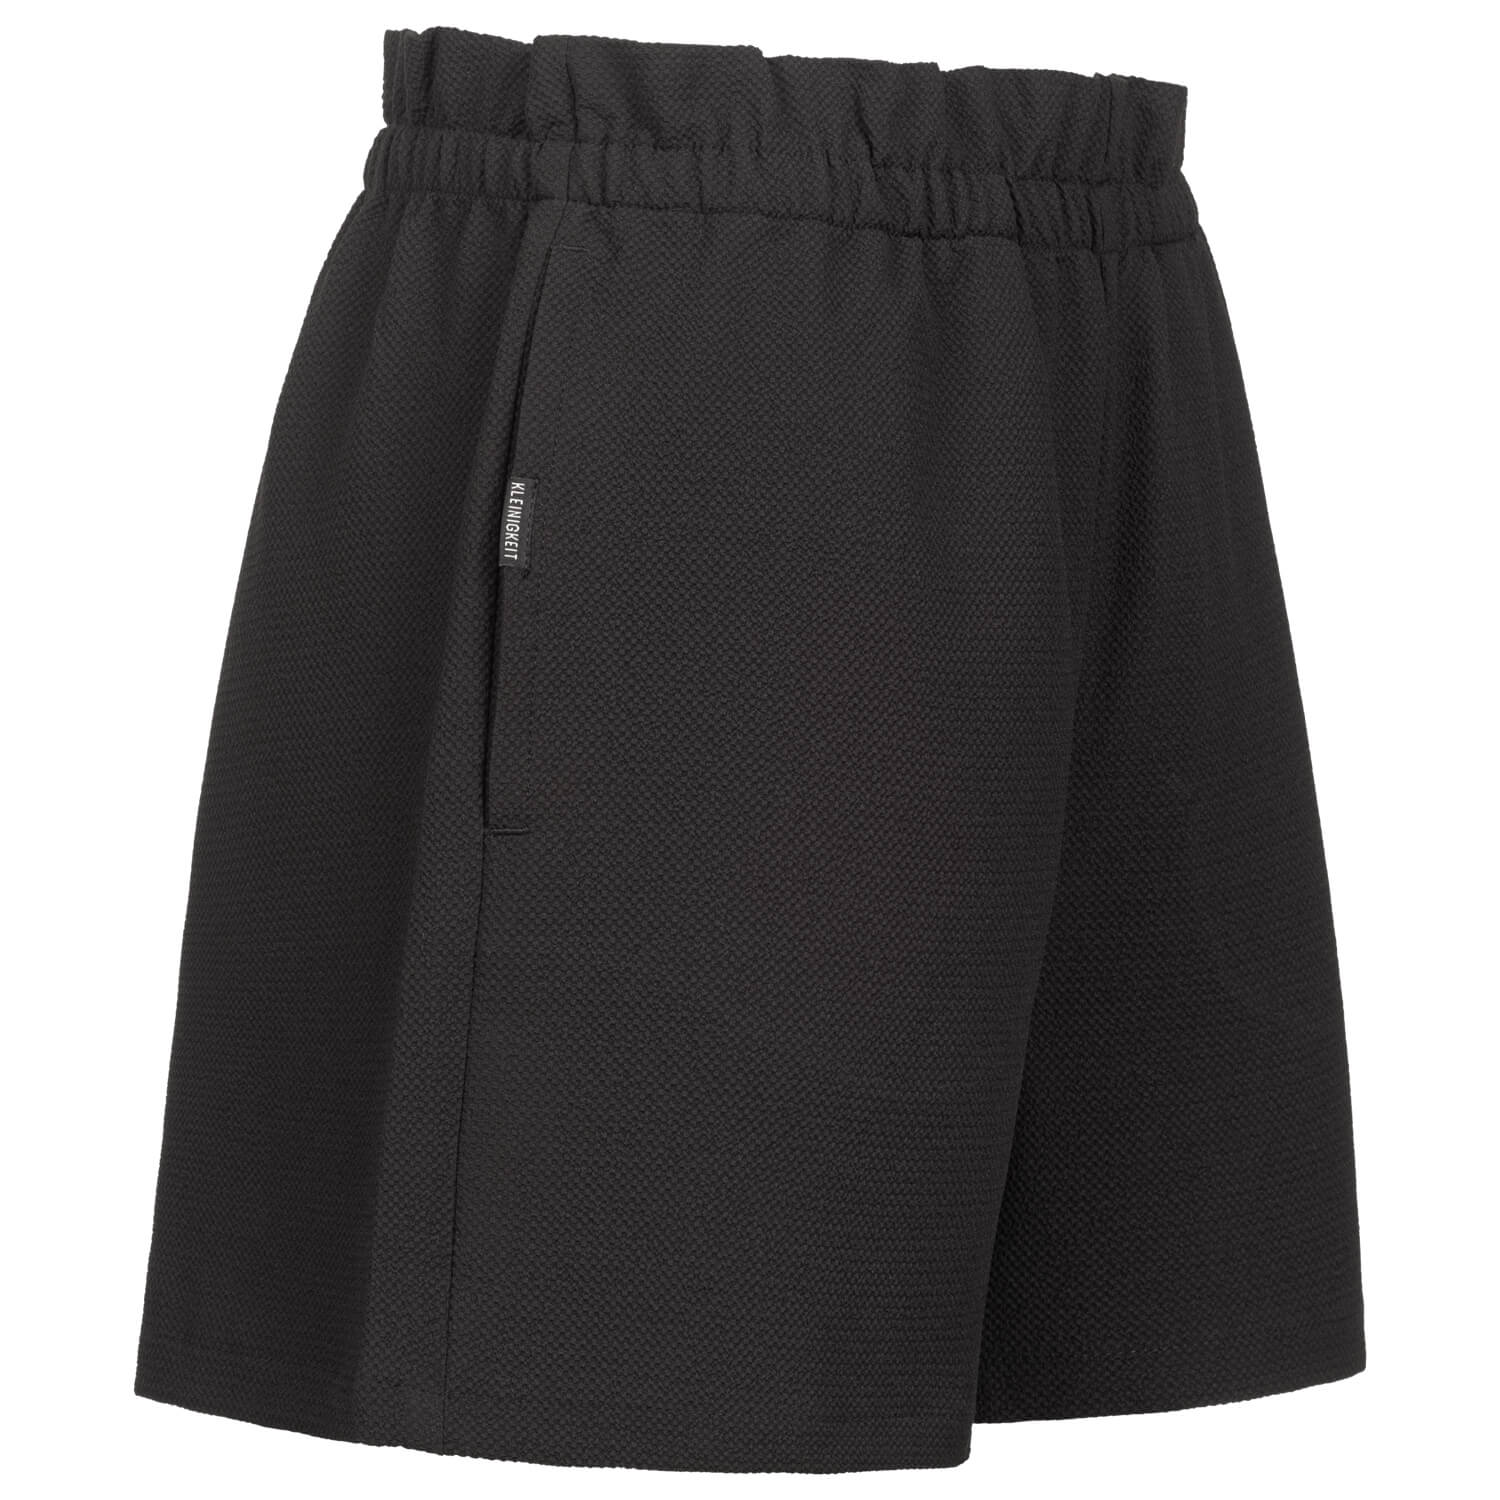 Bild 4: Ladies shorts Retro Outline